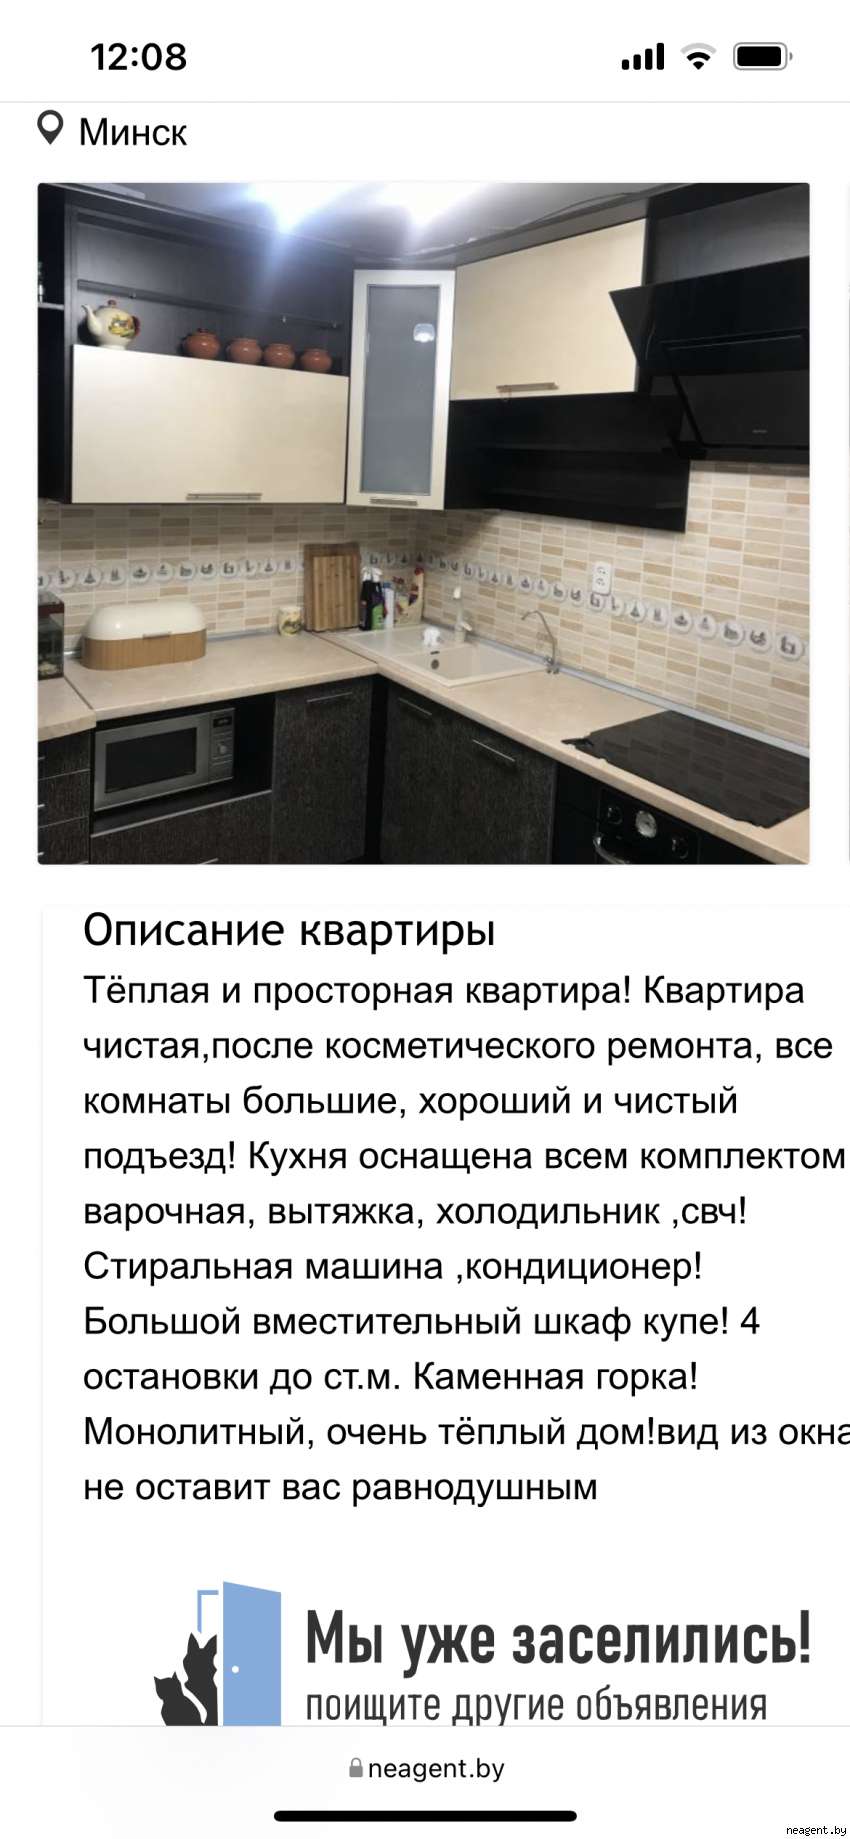 1-комнатная квартира, ул. Скрипникова, 15, 186000 рублей: фото 1